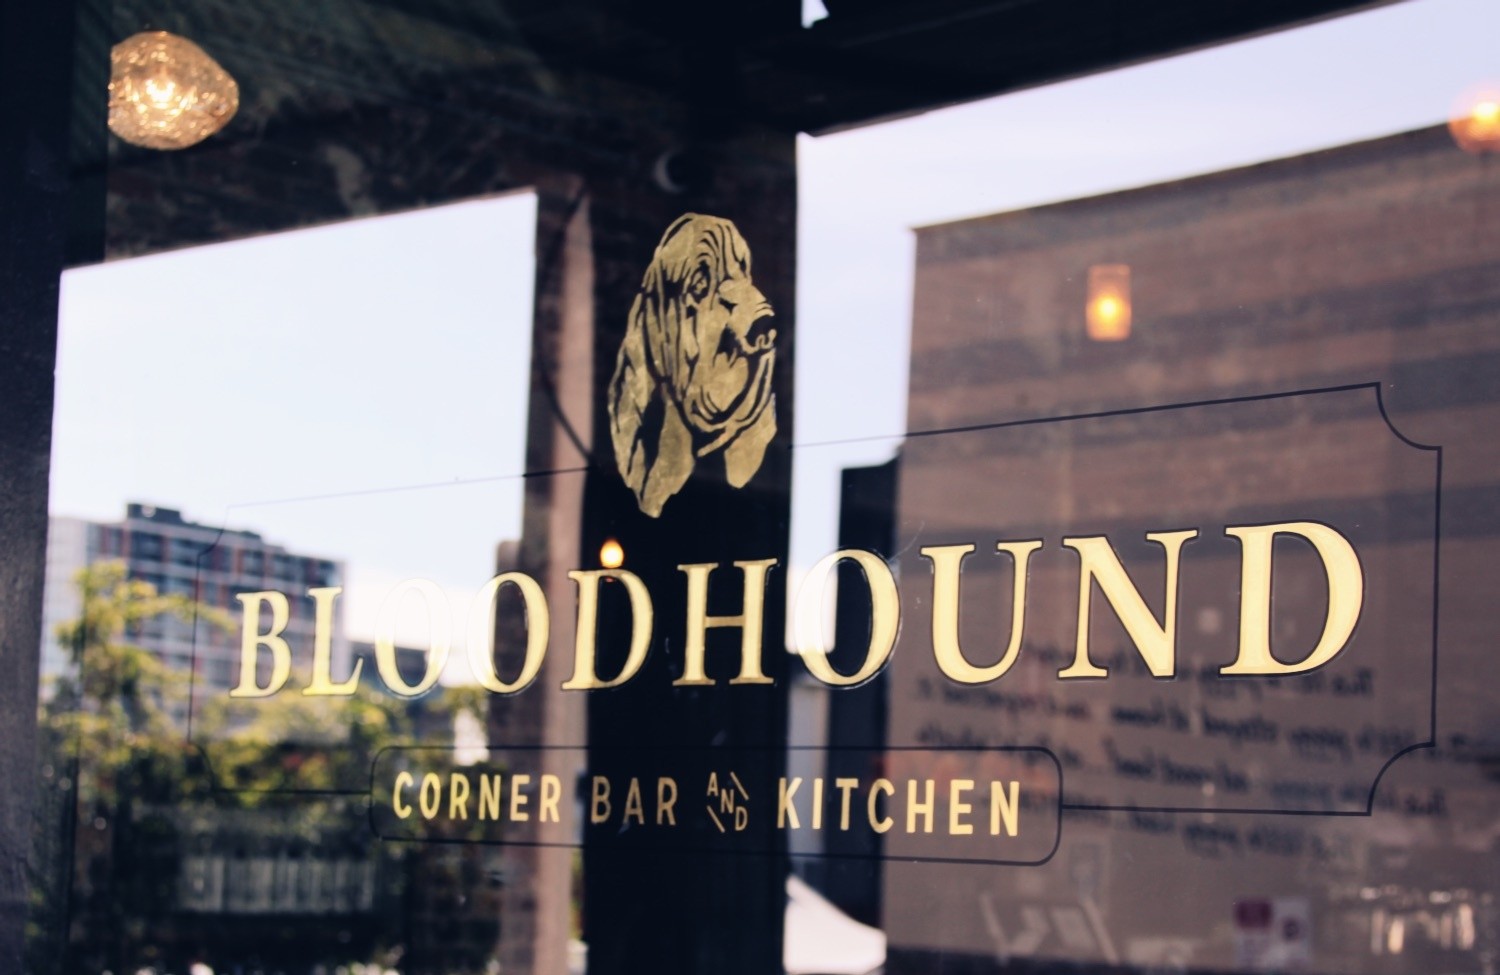 Bloodhound Corner Bar and Kitchen